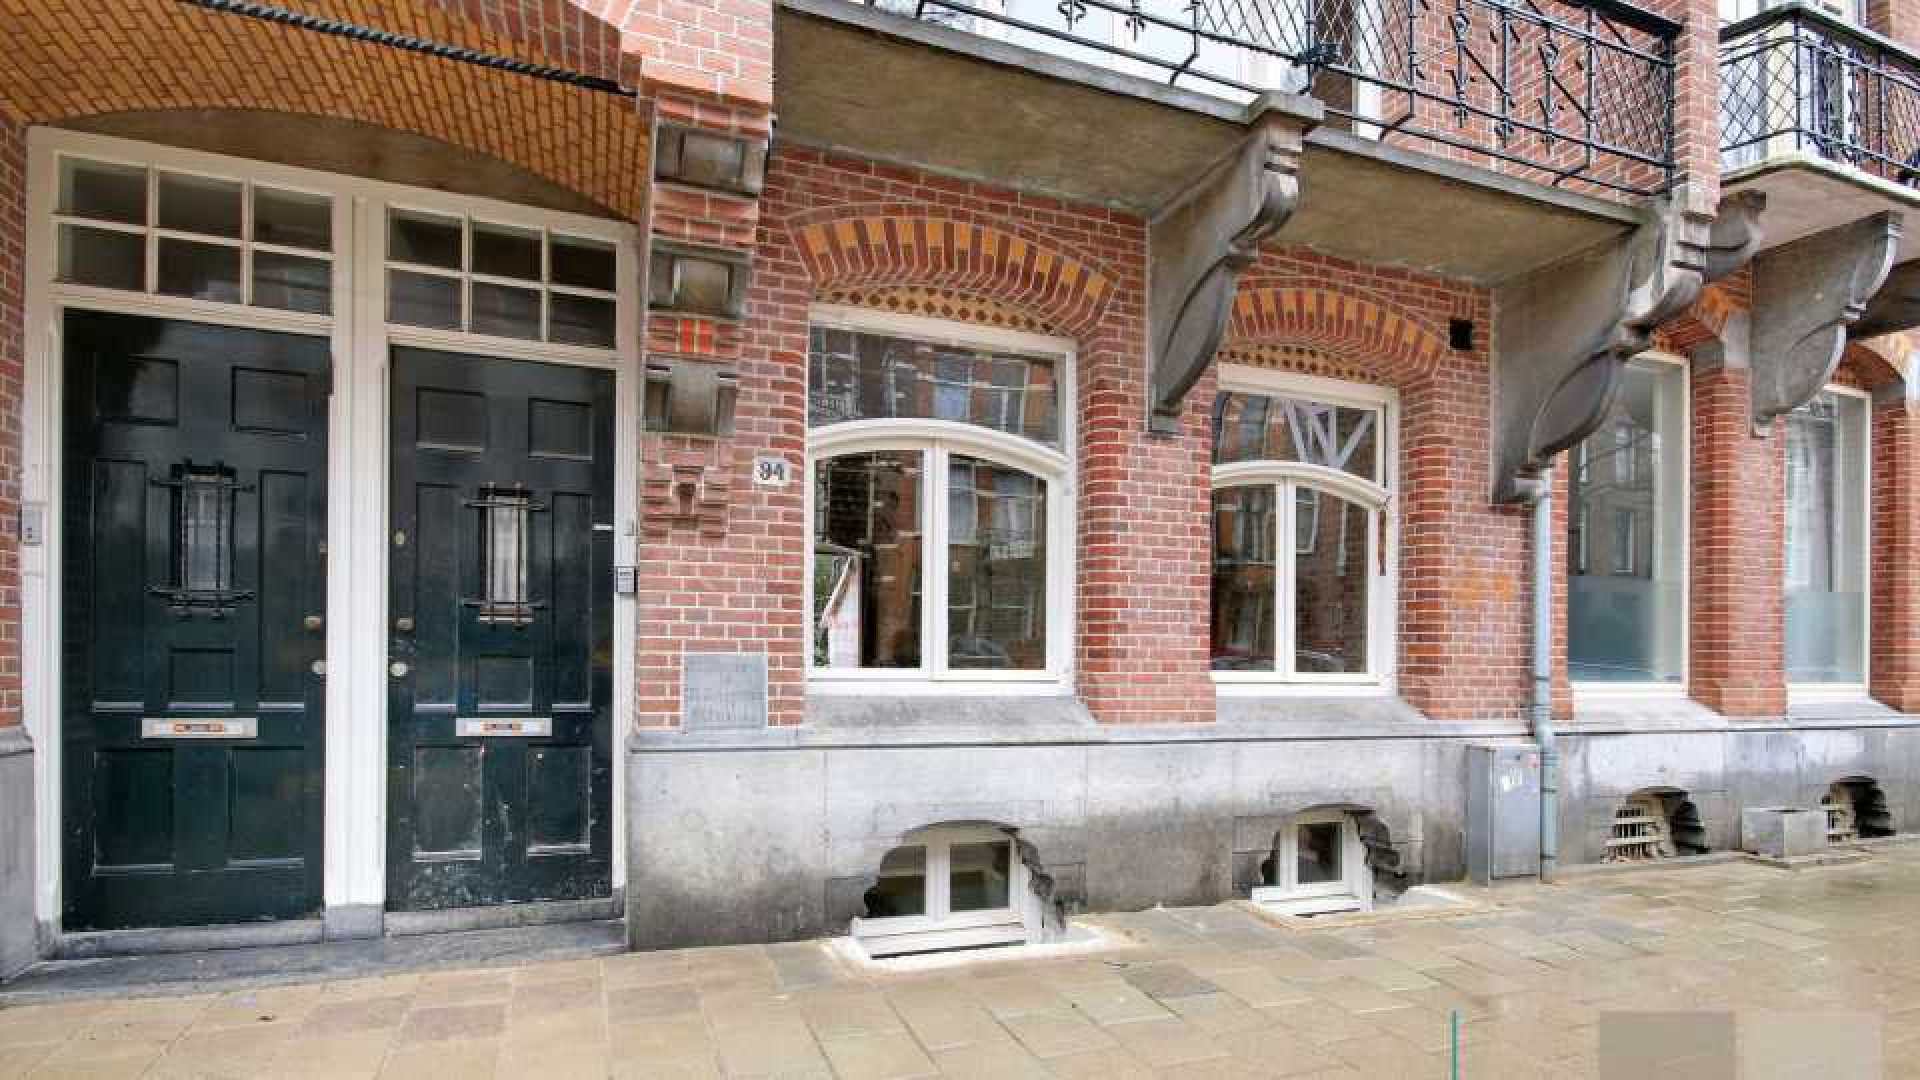 Jordi van den Bussche alias Kwebbelkop koopt in Amsterdam Oud Zuid pand van ruim een miljoen. Zie foto's